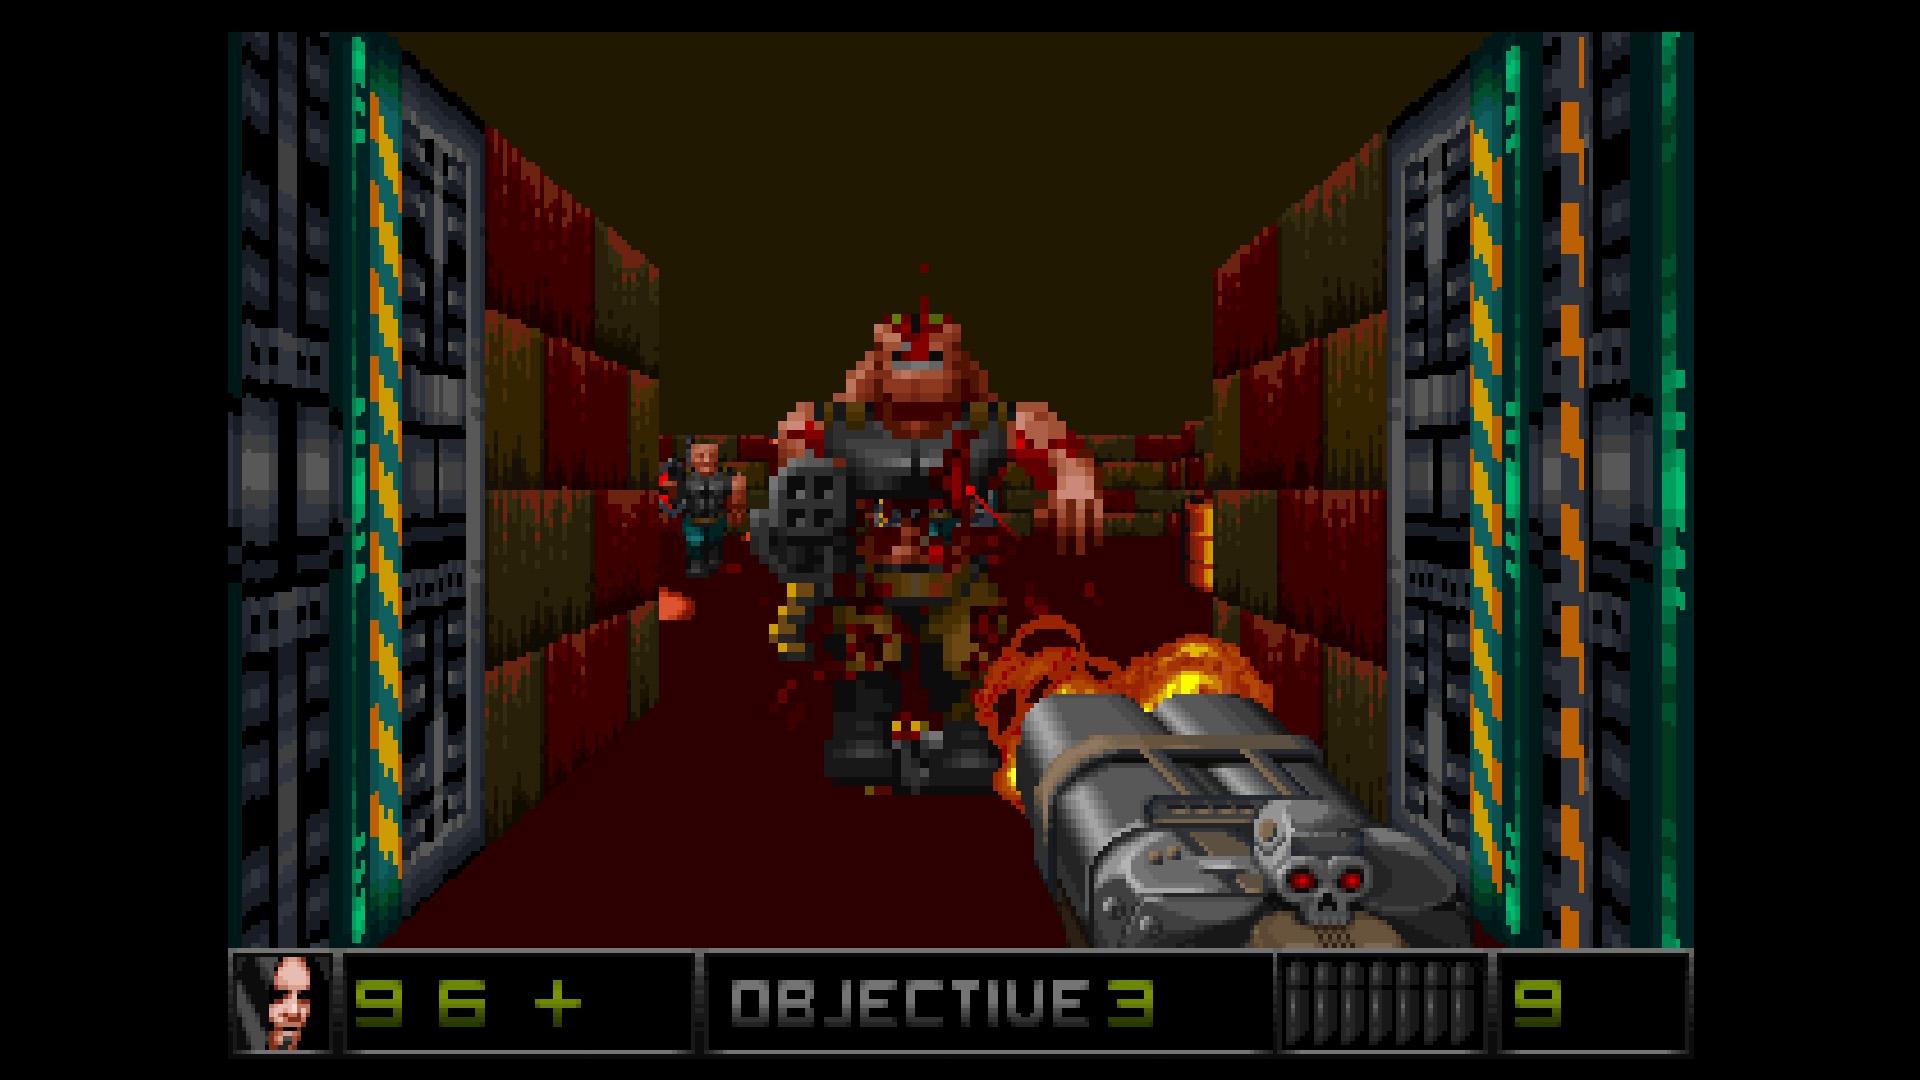 Screenshot №5 from game Merger 3D